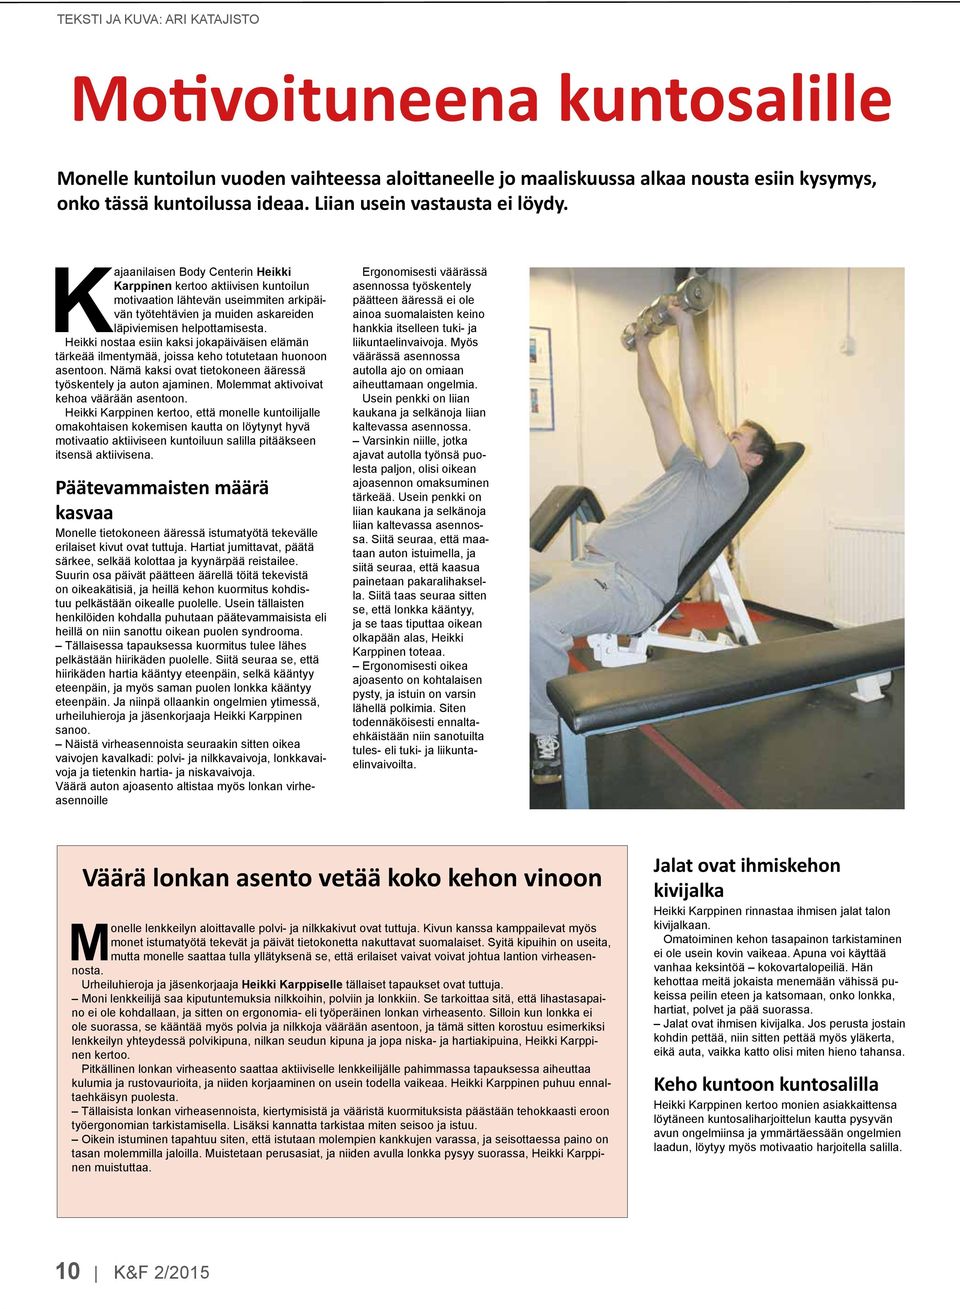 Kajaanilaisen Body Centerin Heikki Karppinen kertoo aktiivisen kuntoilun motivaation lähtevän useimmiten arkipäivän työtehtävien ja muiden askareiden läpiviemisen helpottamisesta.